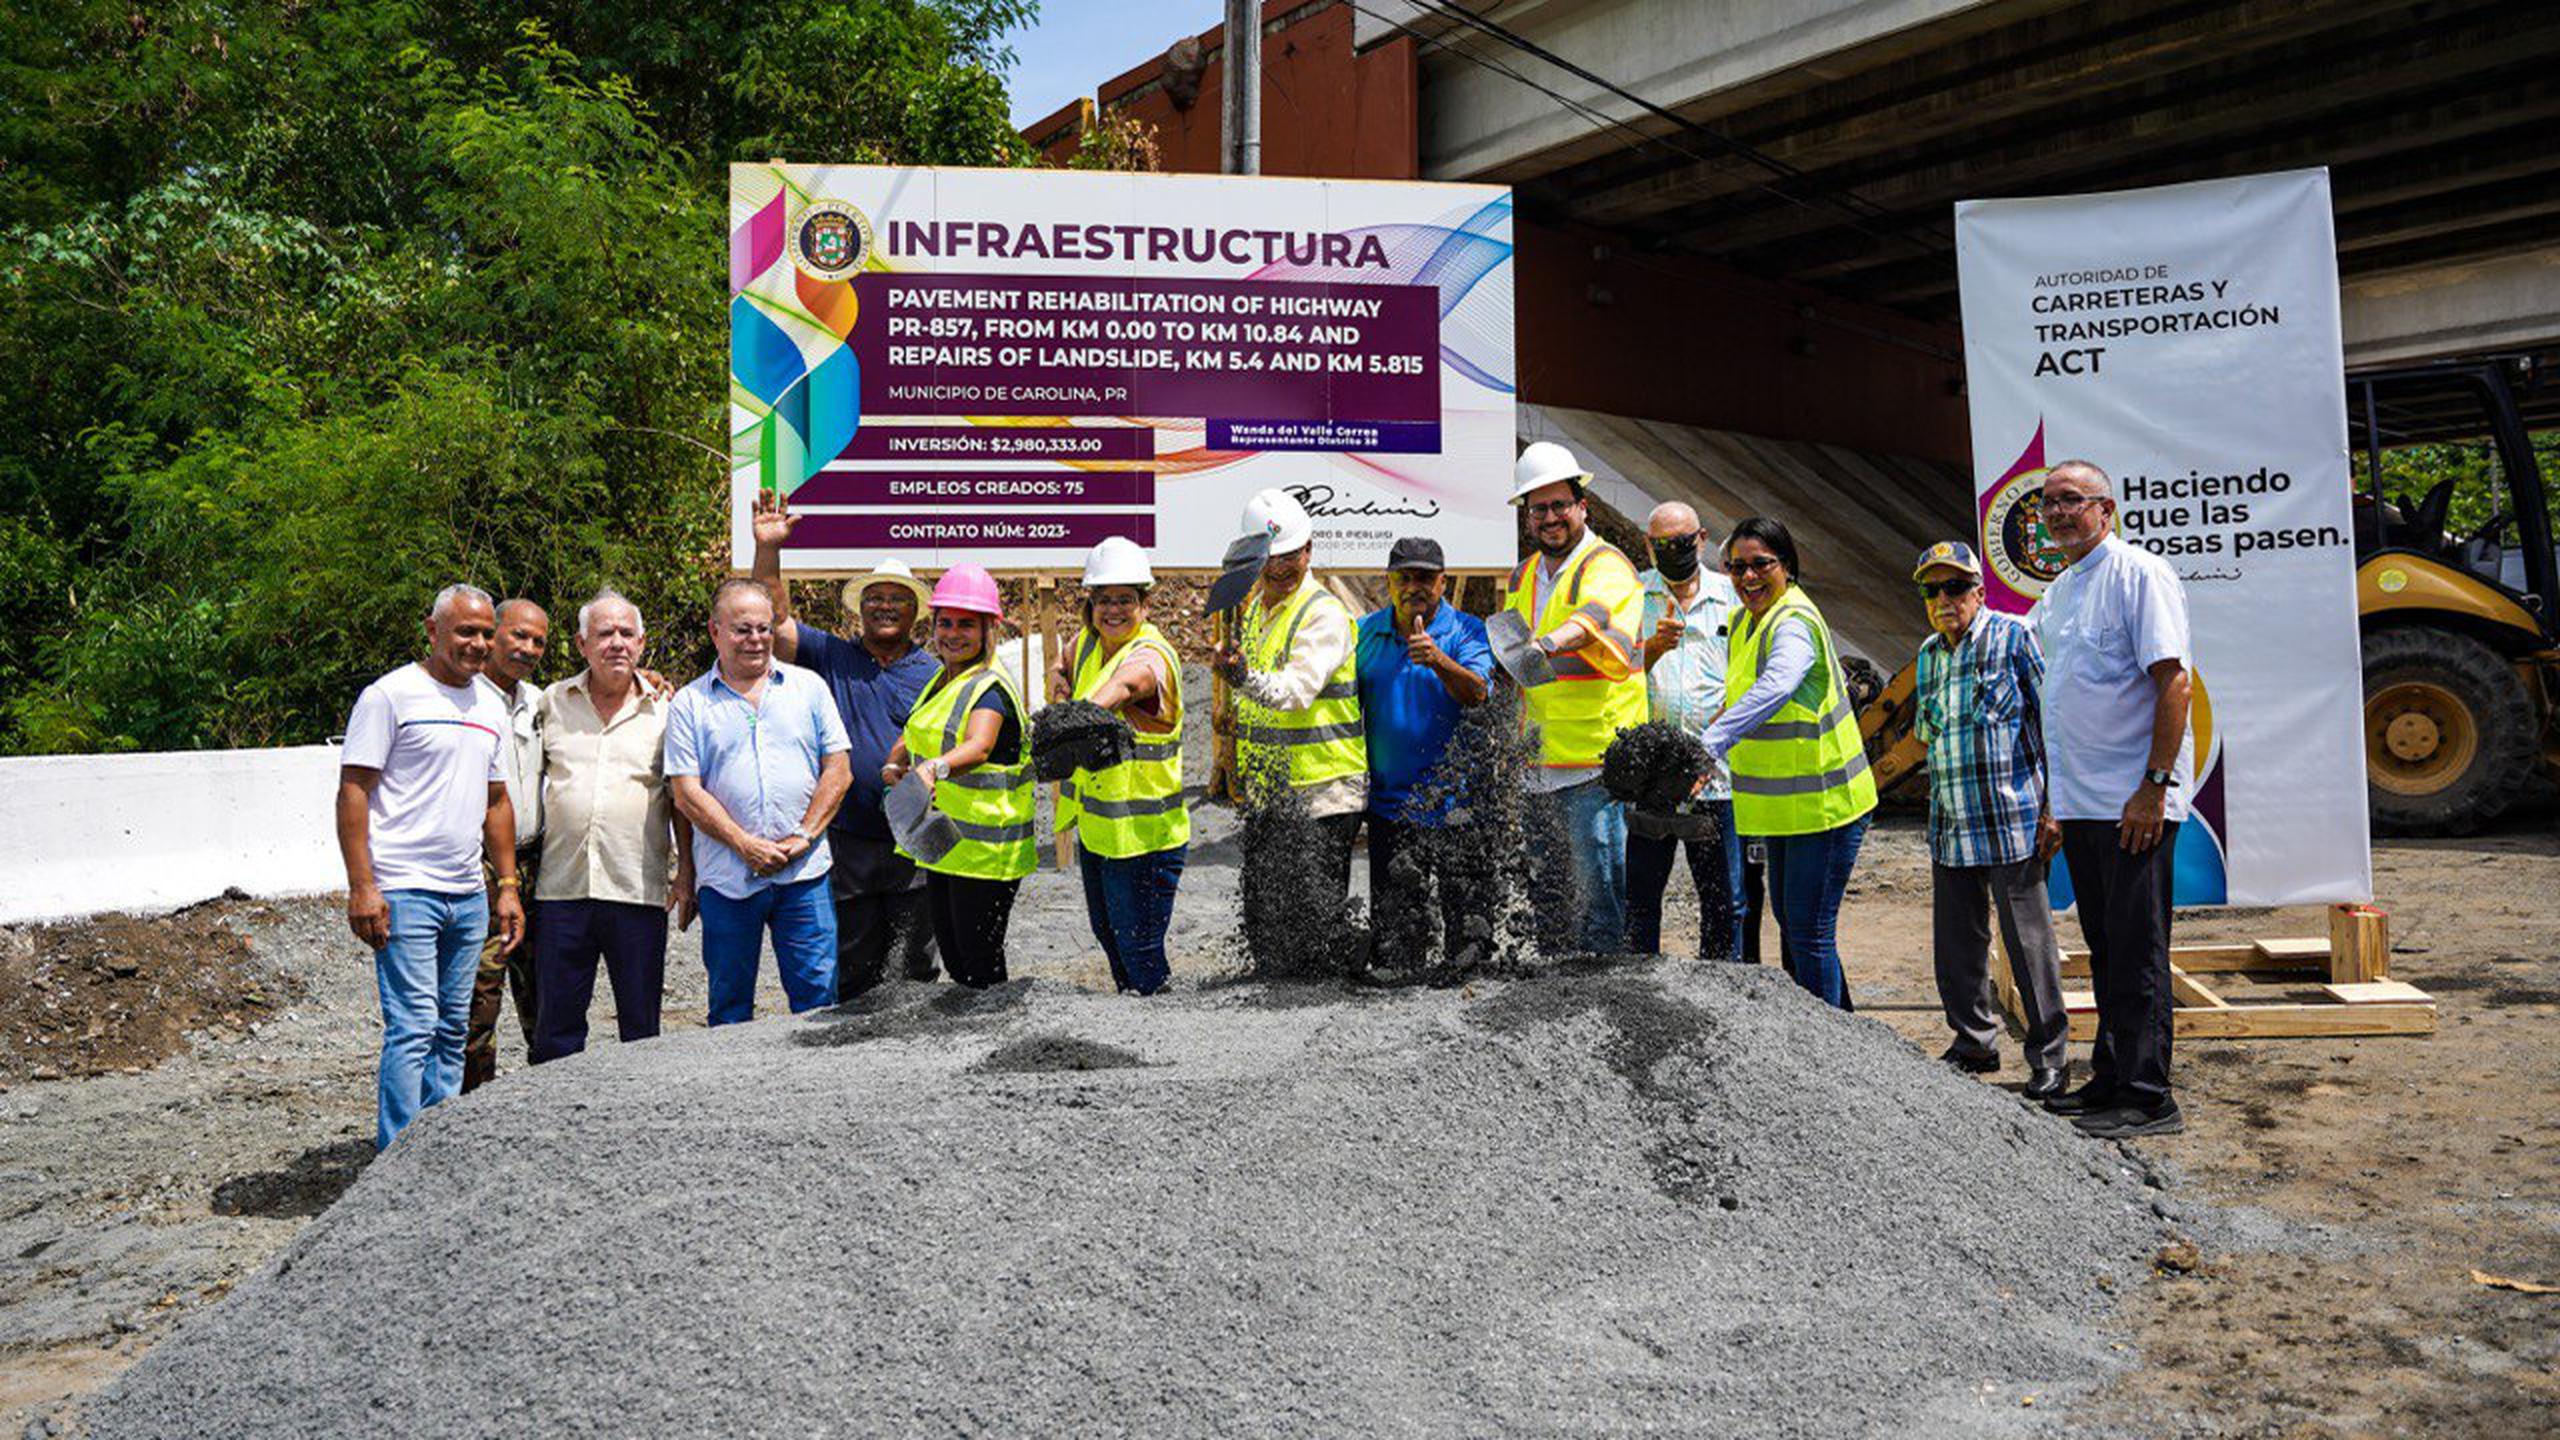 El gobernador Pedro Pierluisi, otros funcionarios de gobierno y vecinos de la comunidad ponen la primera piedra del proyecto para mejorar la carretera PR-857.